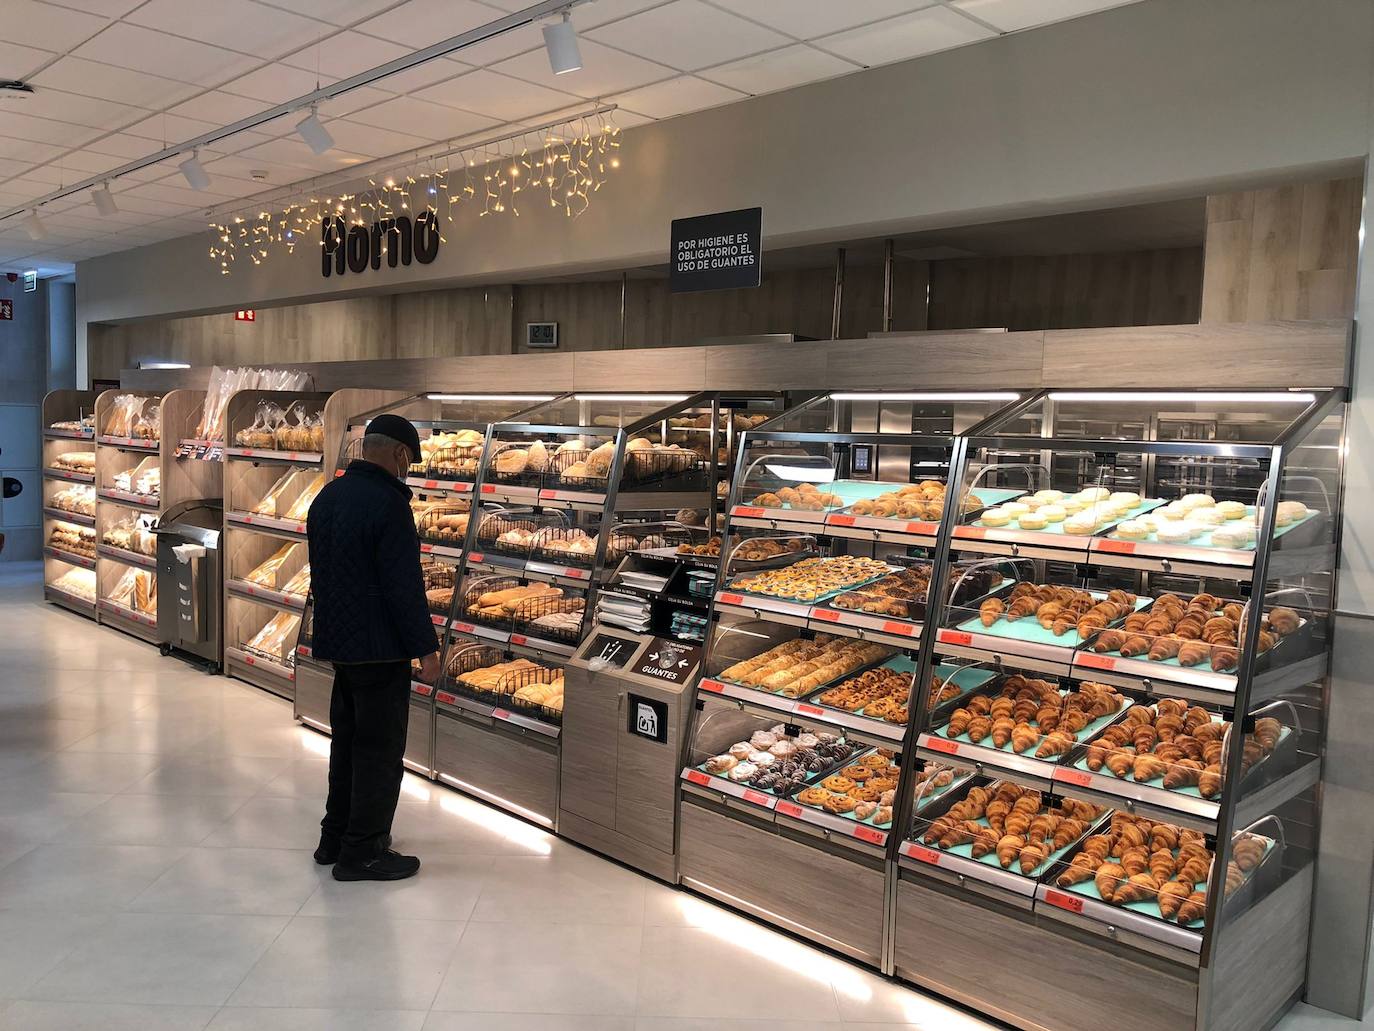 Mercadona abre este lunes su nuevo supermercado en la avenida de Montearenas de Ponferrada.